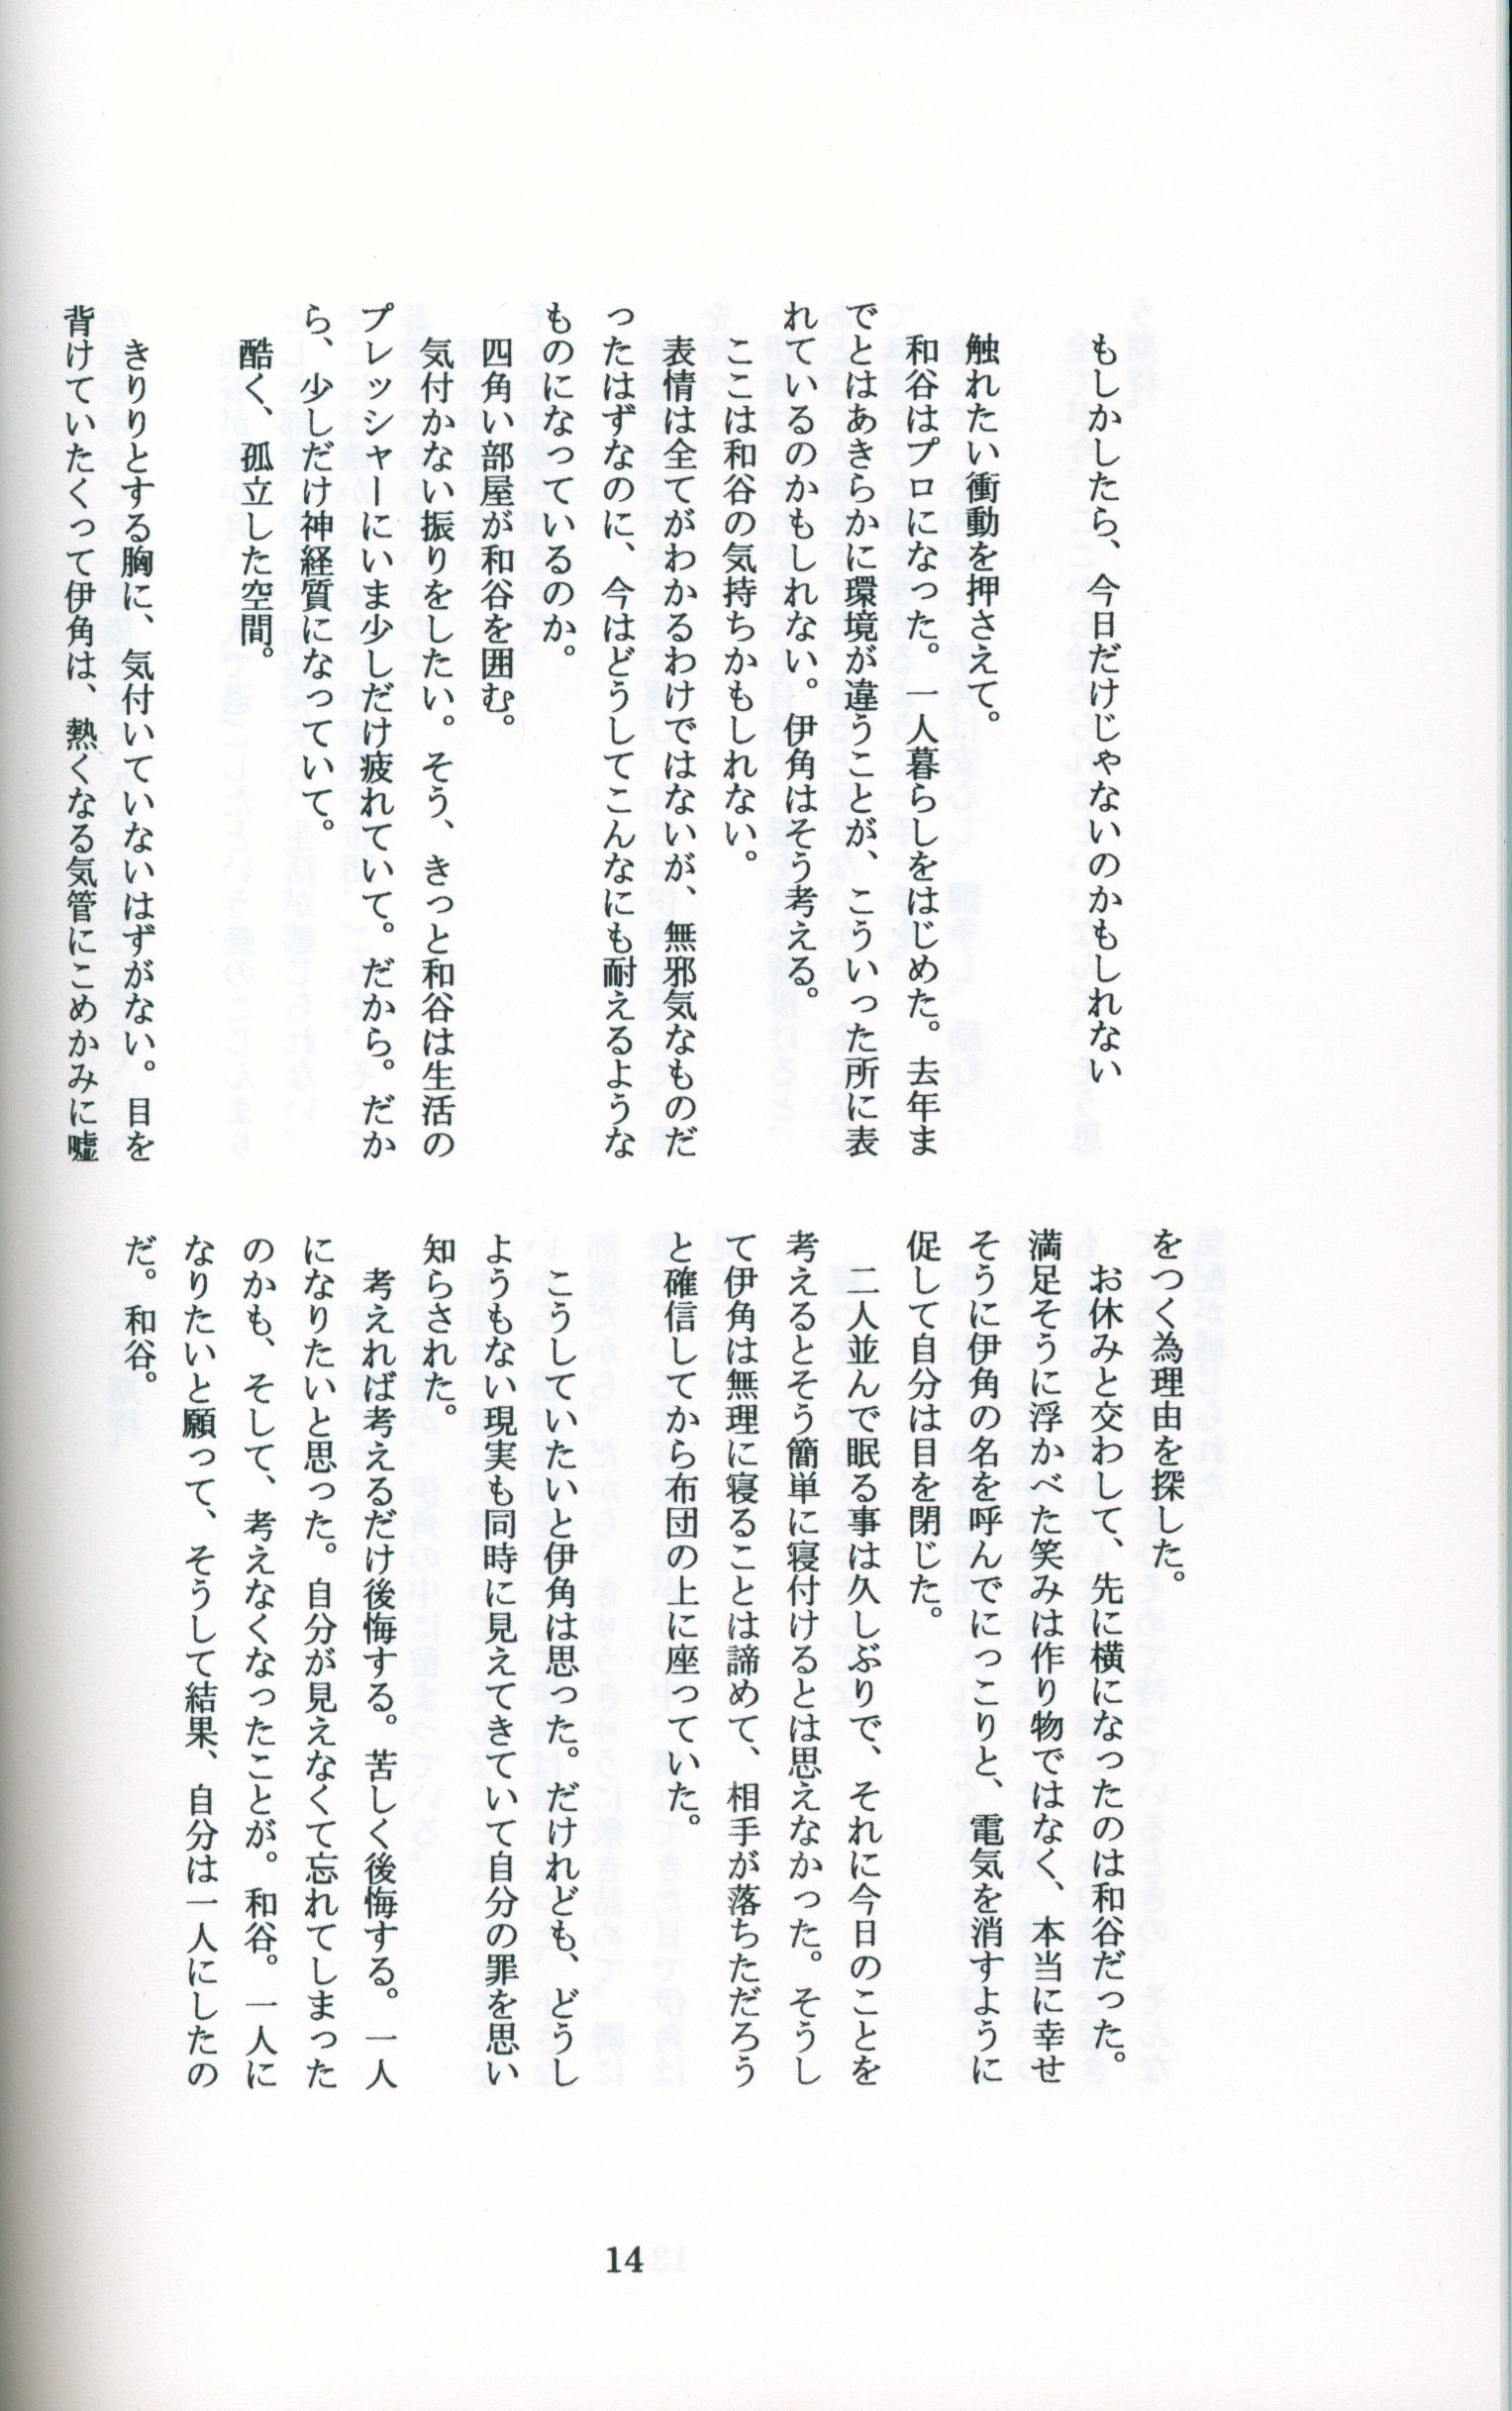 Doujinshi - Hikaru no Go / Touya Akira & Shindou Hikaru & Waya Yoshitaka & Isumi Shin'ichirō (キラキラの恋) / リリカル★サイクル